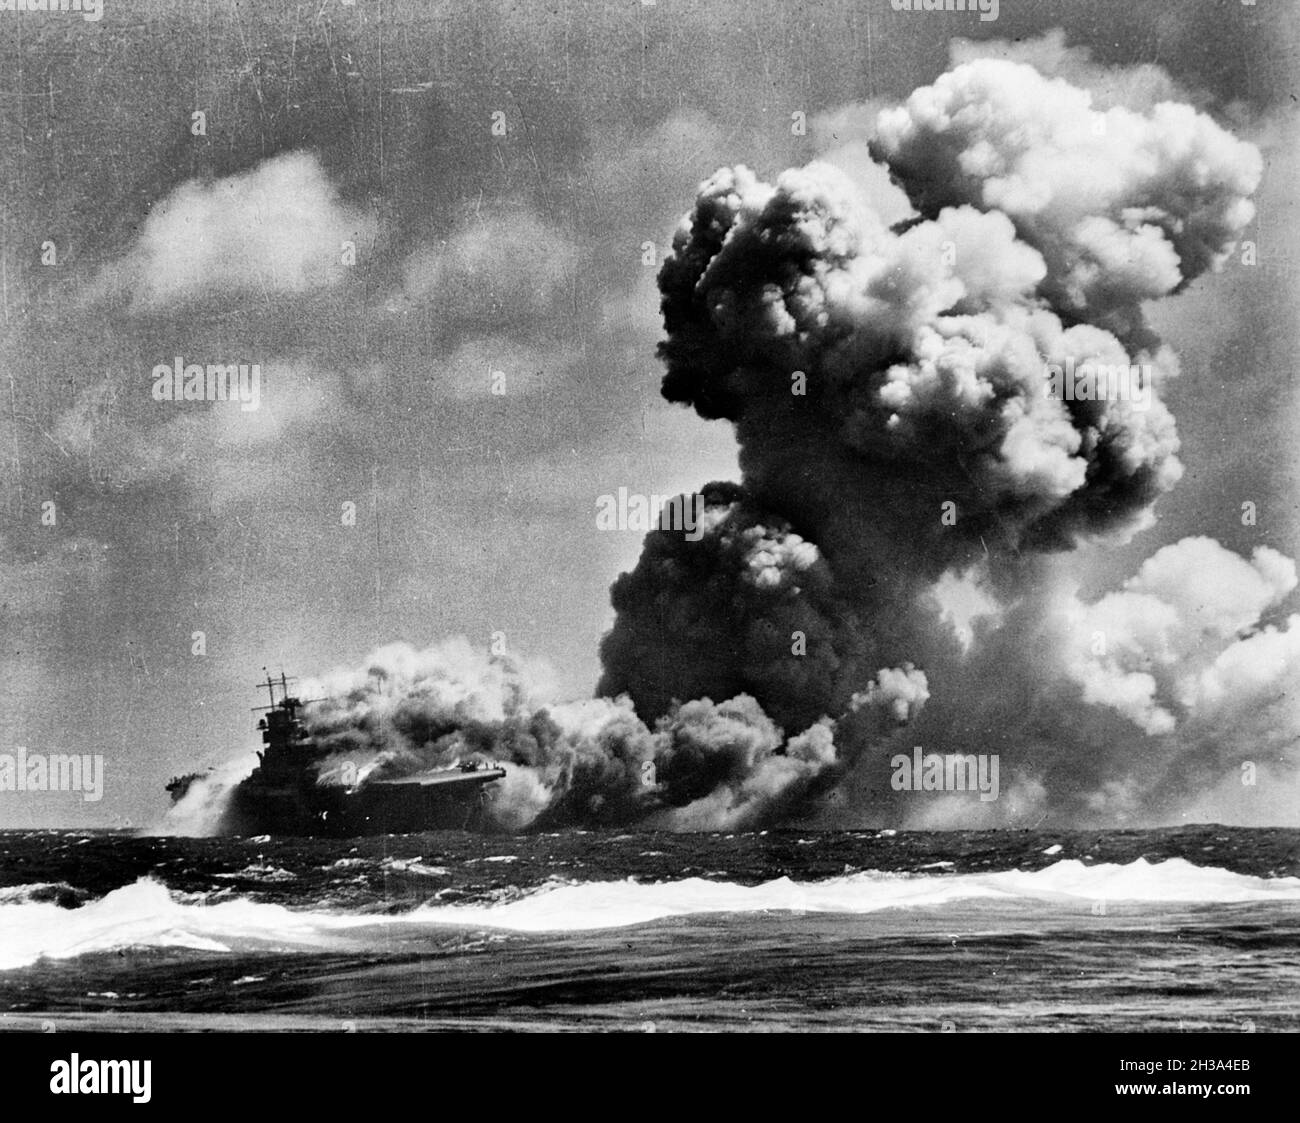 El portaaviones estadounidense USS Wasp (CV-7) ardiendo después de recibir tres hits torpedo desde el submarino japonés I-19 al este de las Islas Salomón, el 15 de septiembre de 1942. Foto de stock